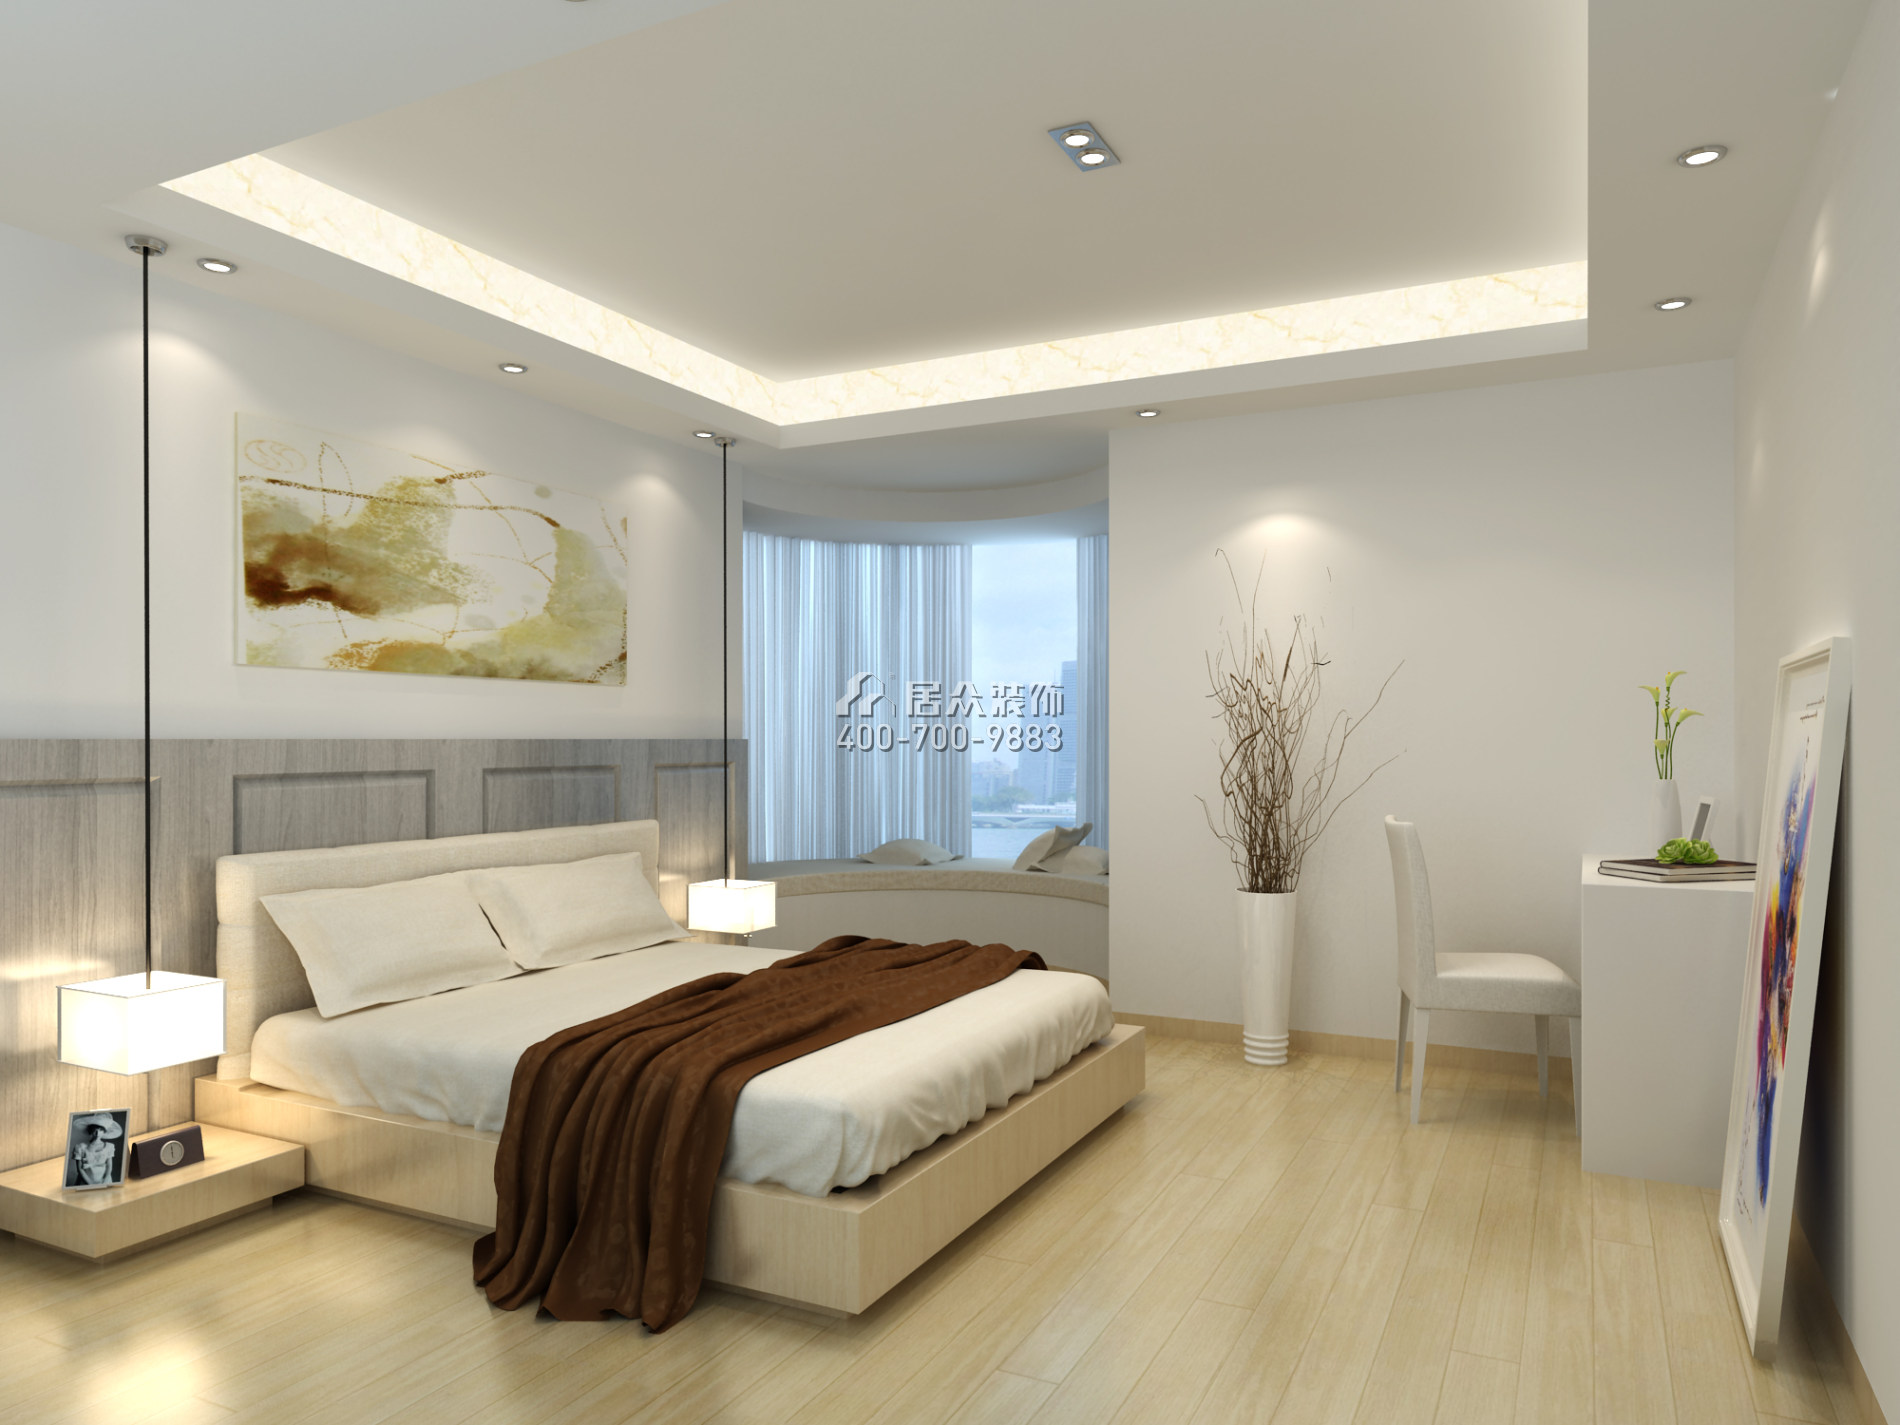 天湖郦都180平方米现代简约风格平层户型卧室装修效果图